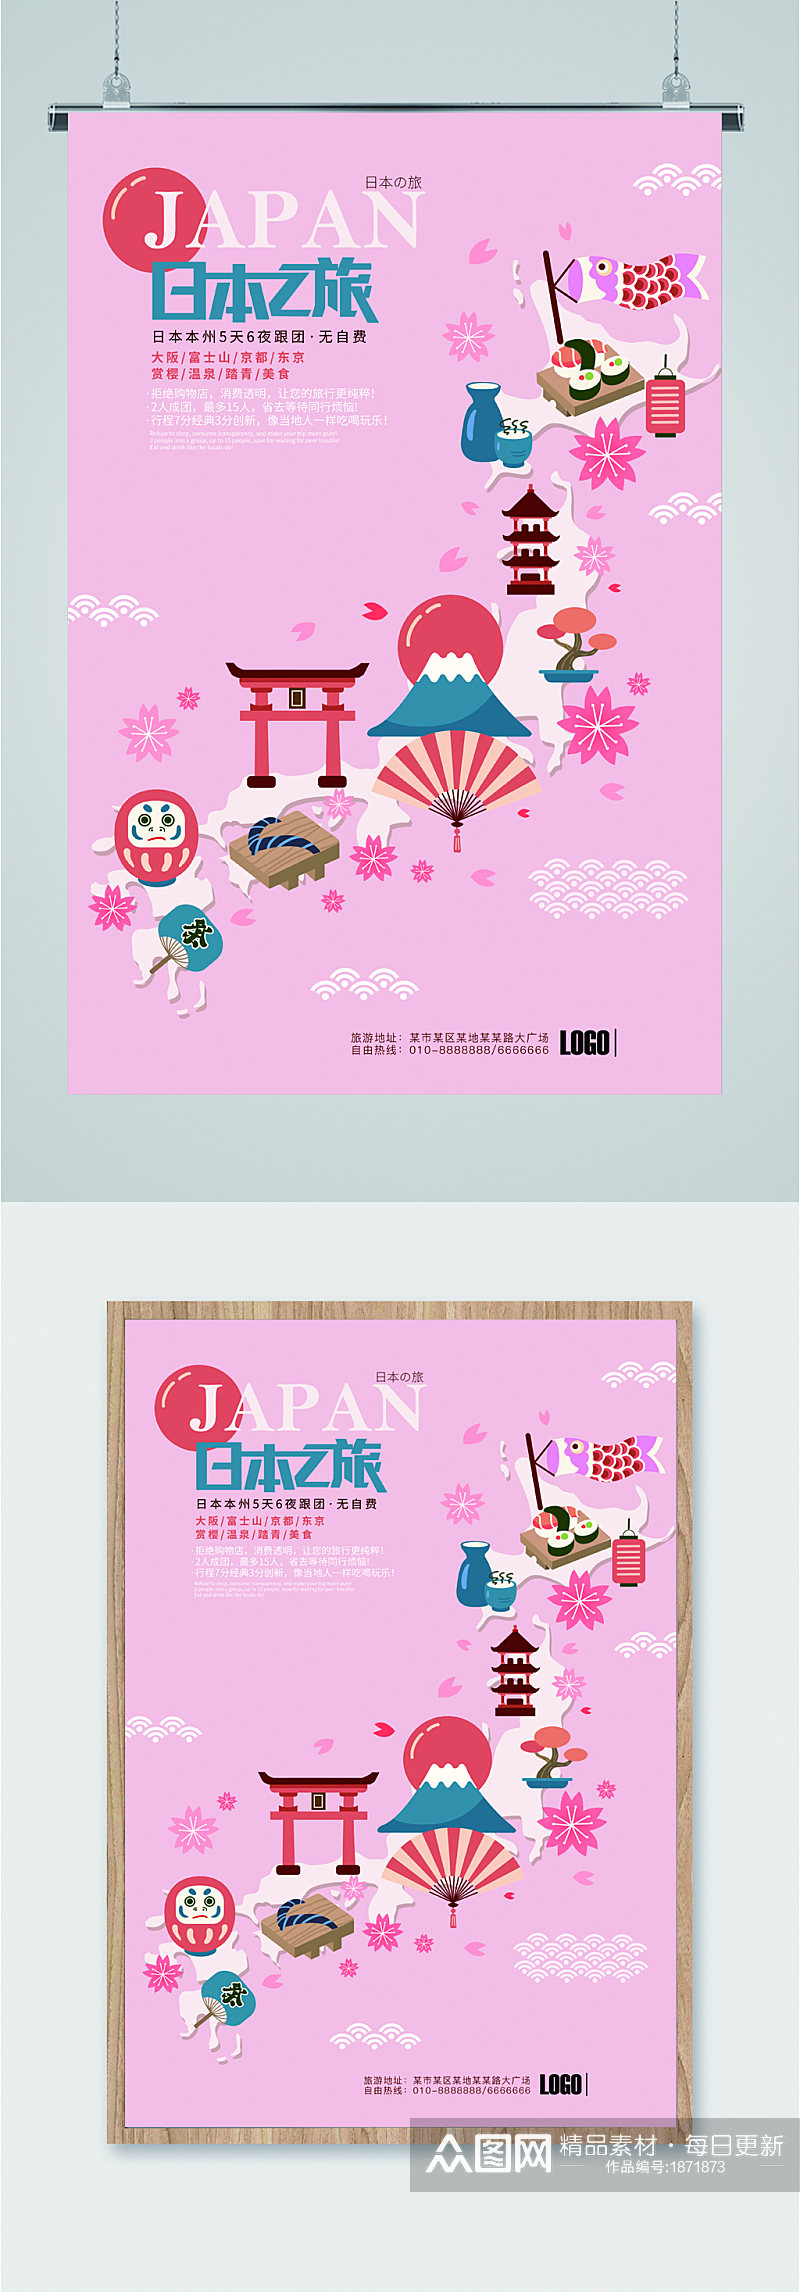 粉色系日本旅行海报素材